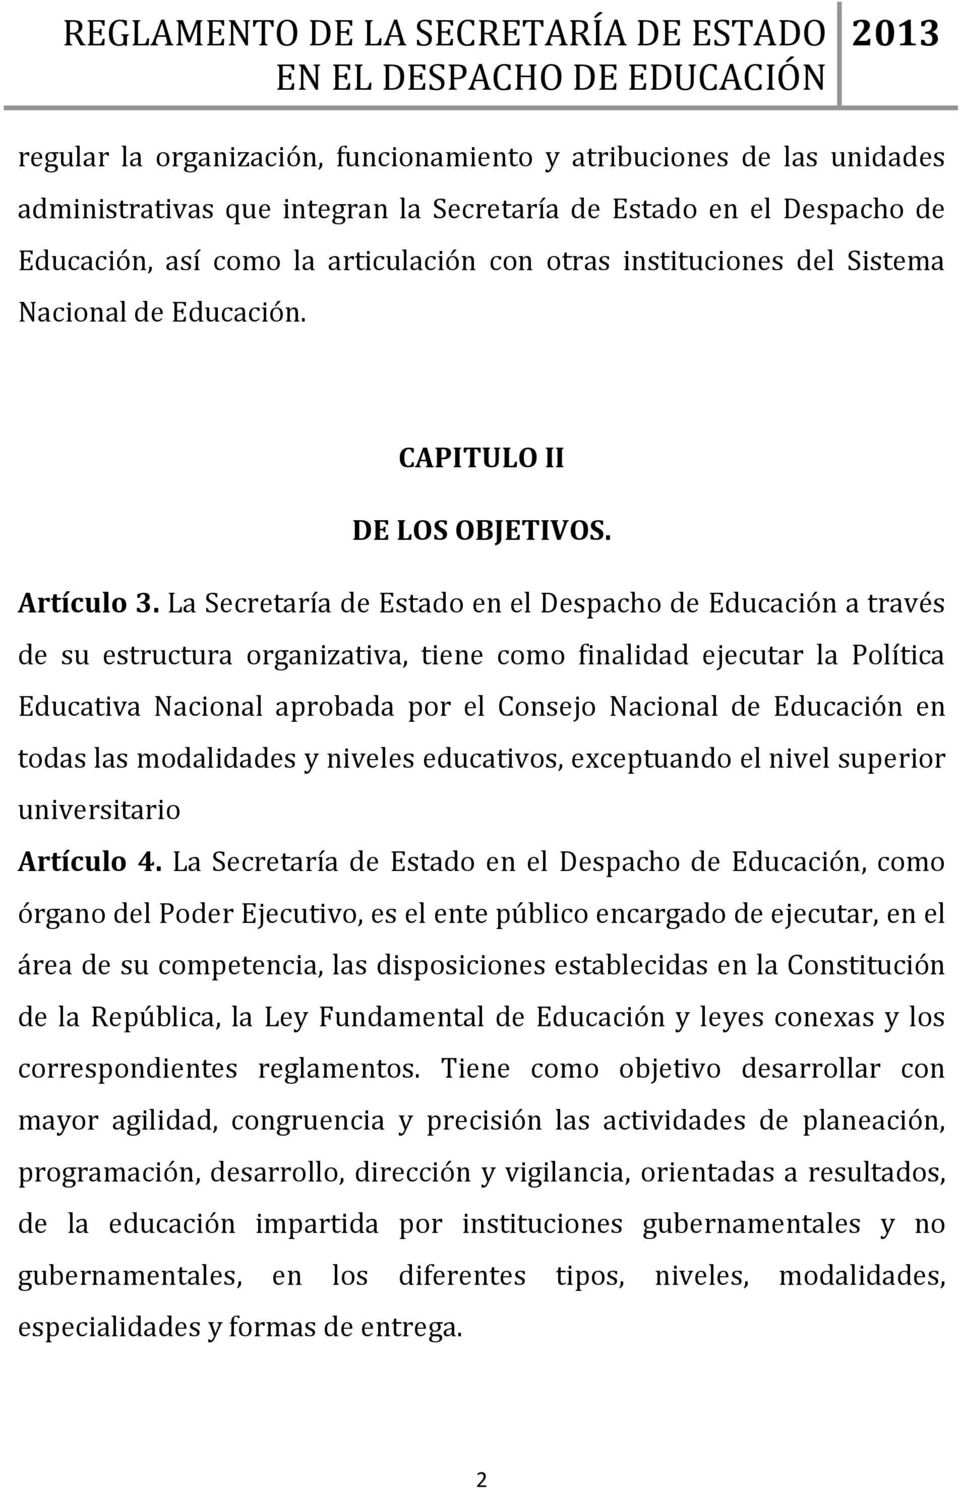 La Secretaría de Estado en el Despacho de Educación a través de su estructura organizativa, tiene como finalidad ejecutar la Política Educativa Nacional aprobada por el Consejo Nacional de Educación